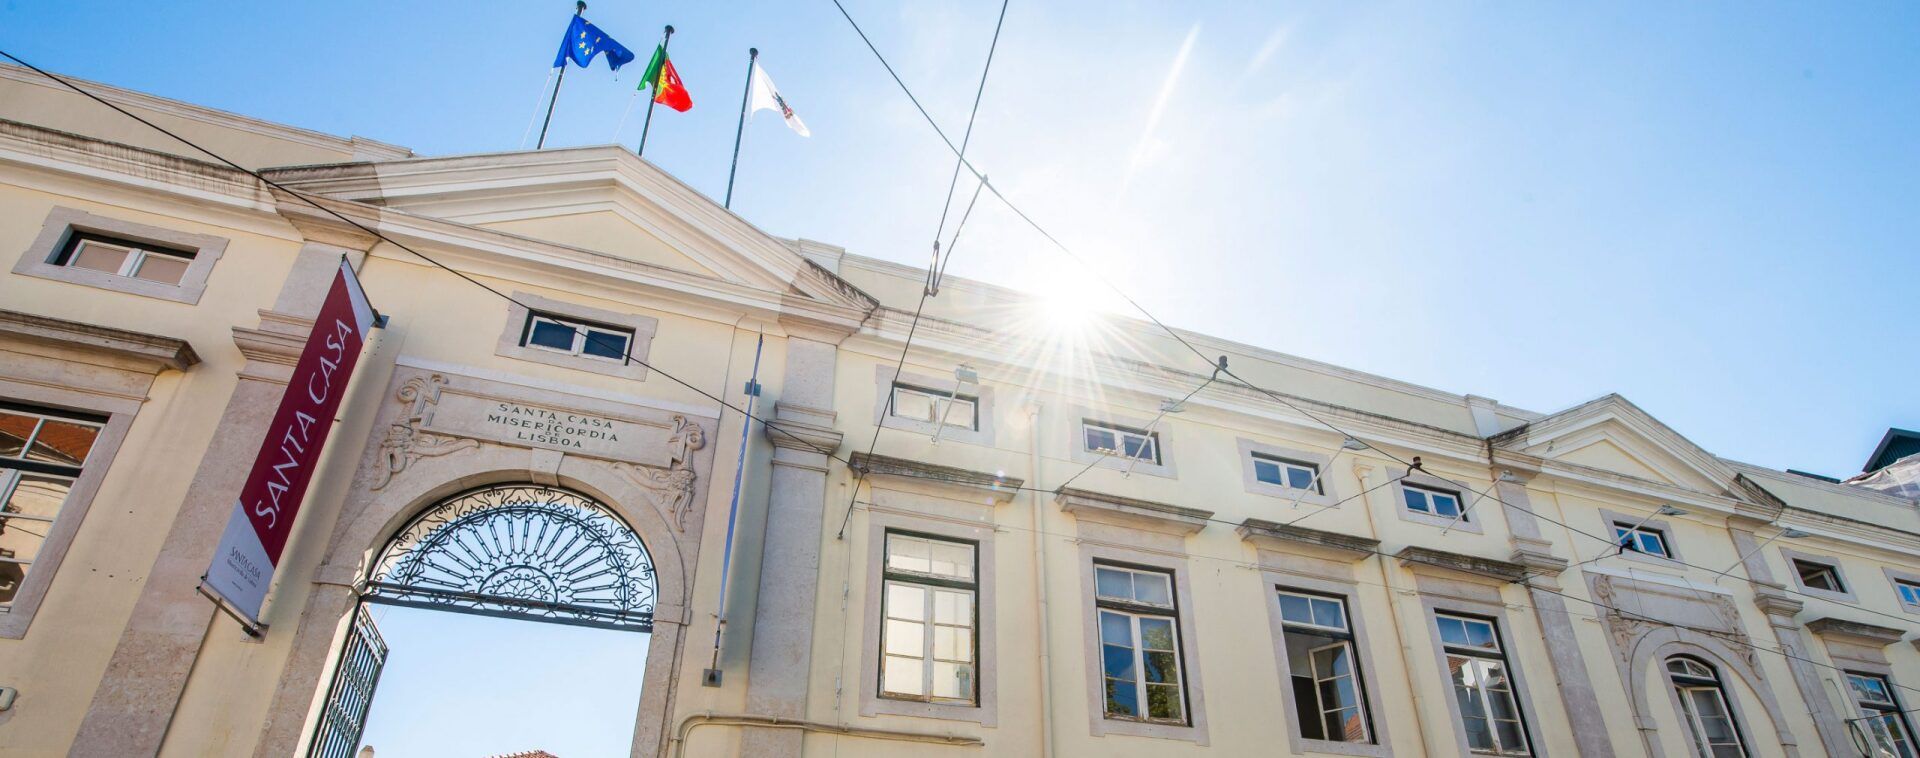 foto da faixada Santa Casa de Misericórdia de Lisboa em Portugal. O céu está azul e o sol brilha, em cima da construção pode-se ver três bandeiras.